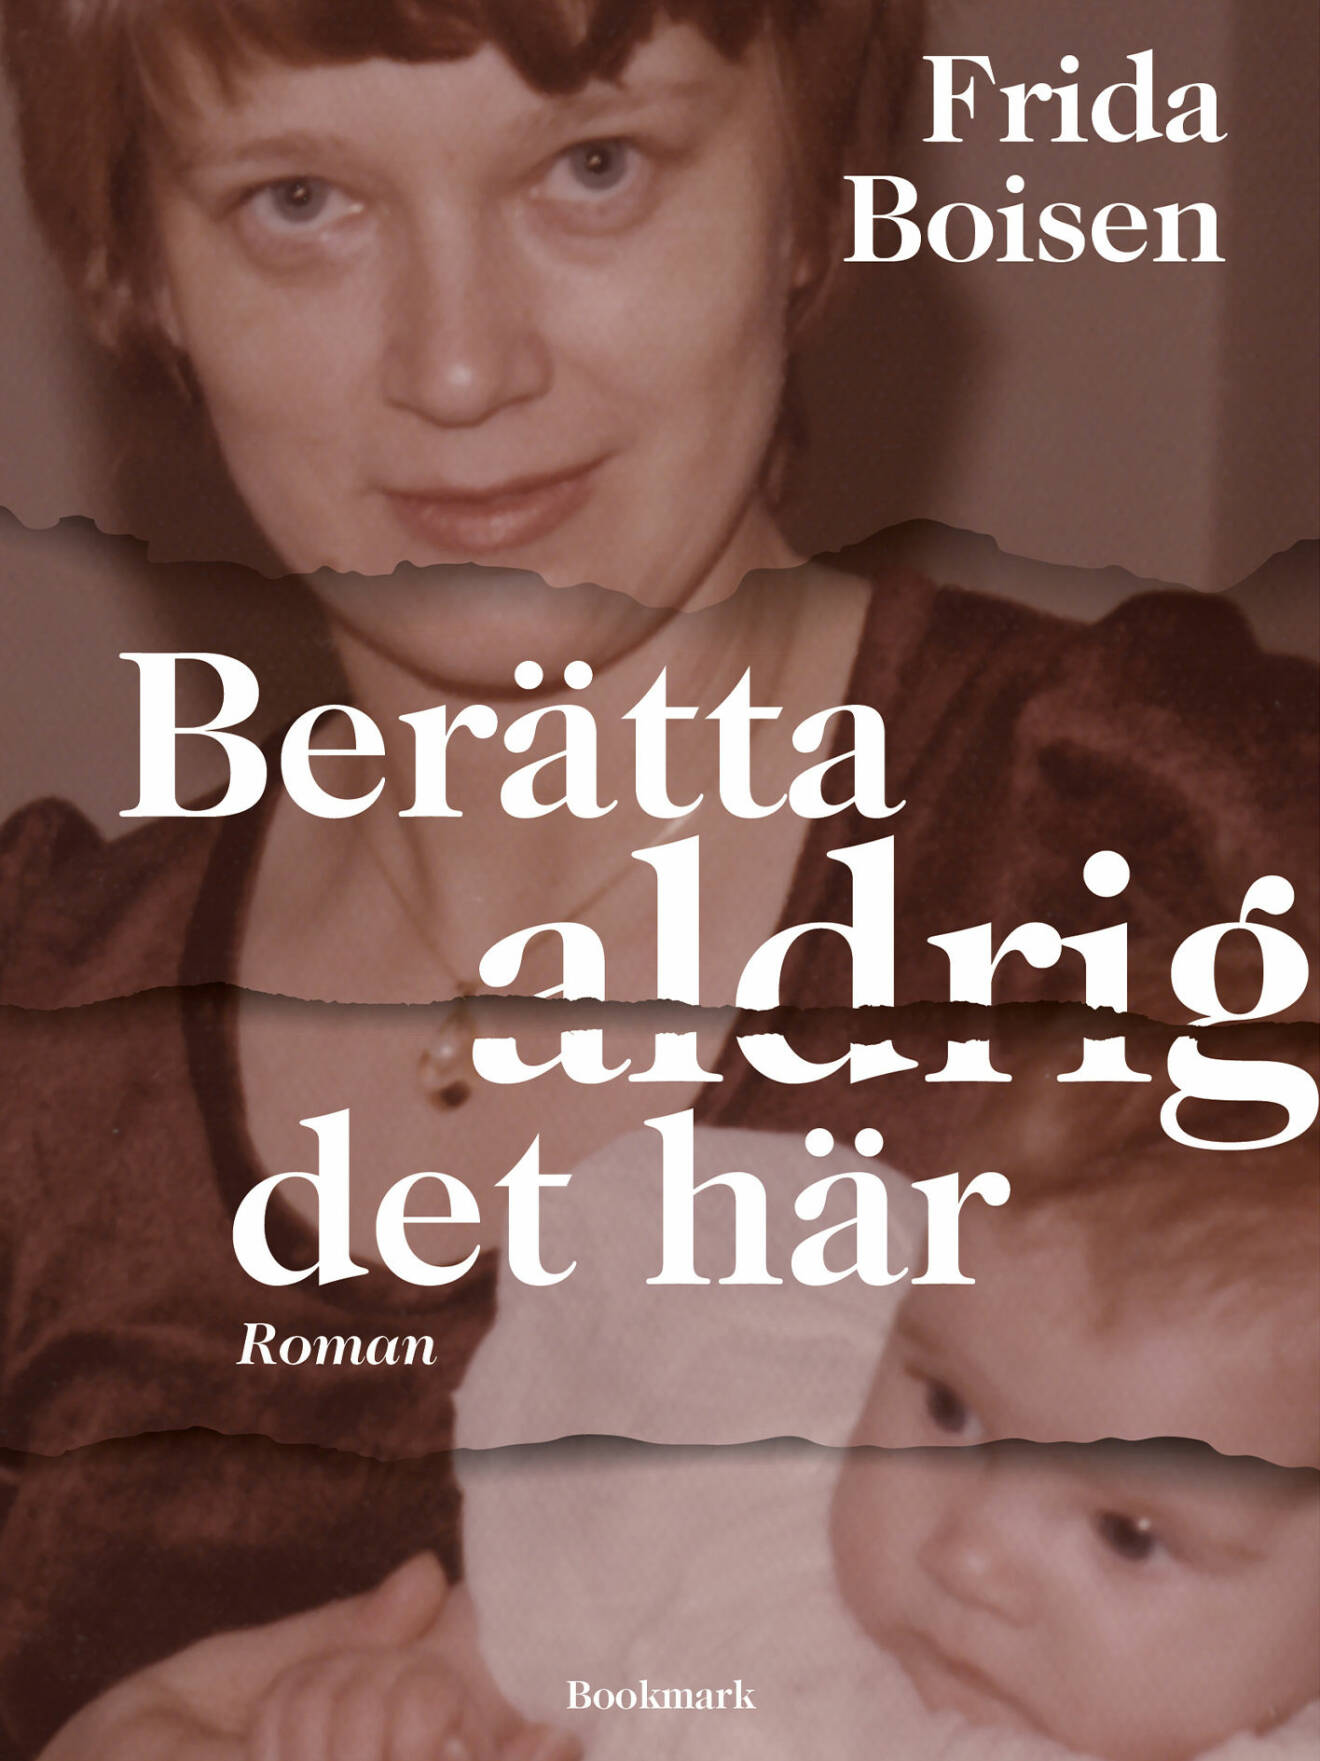 Bokomslag till Berätta aldrig det här, bild på författaren och hennes mamma.